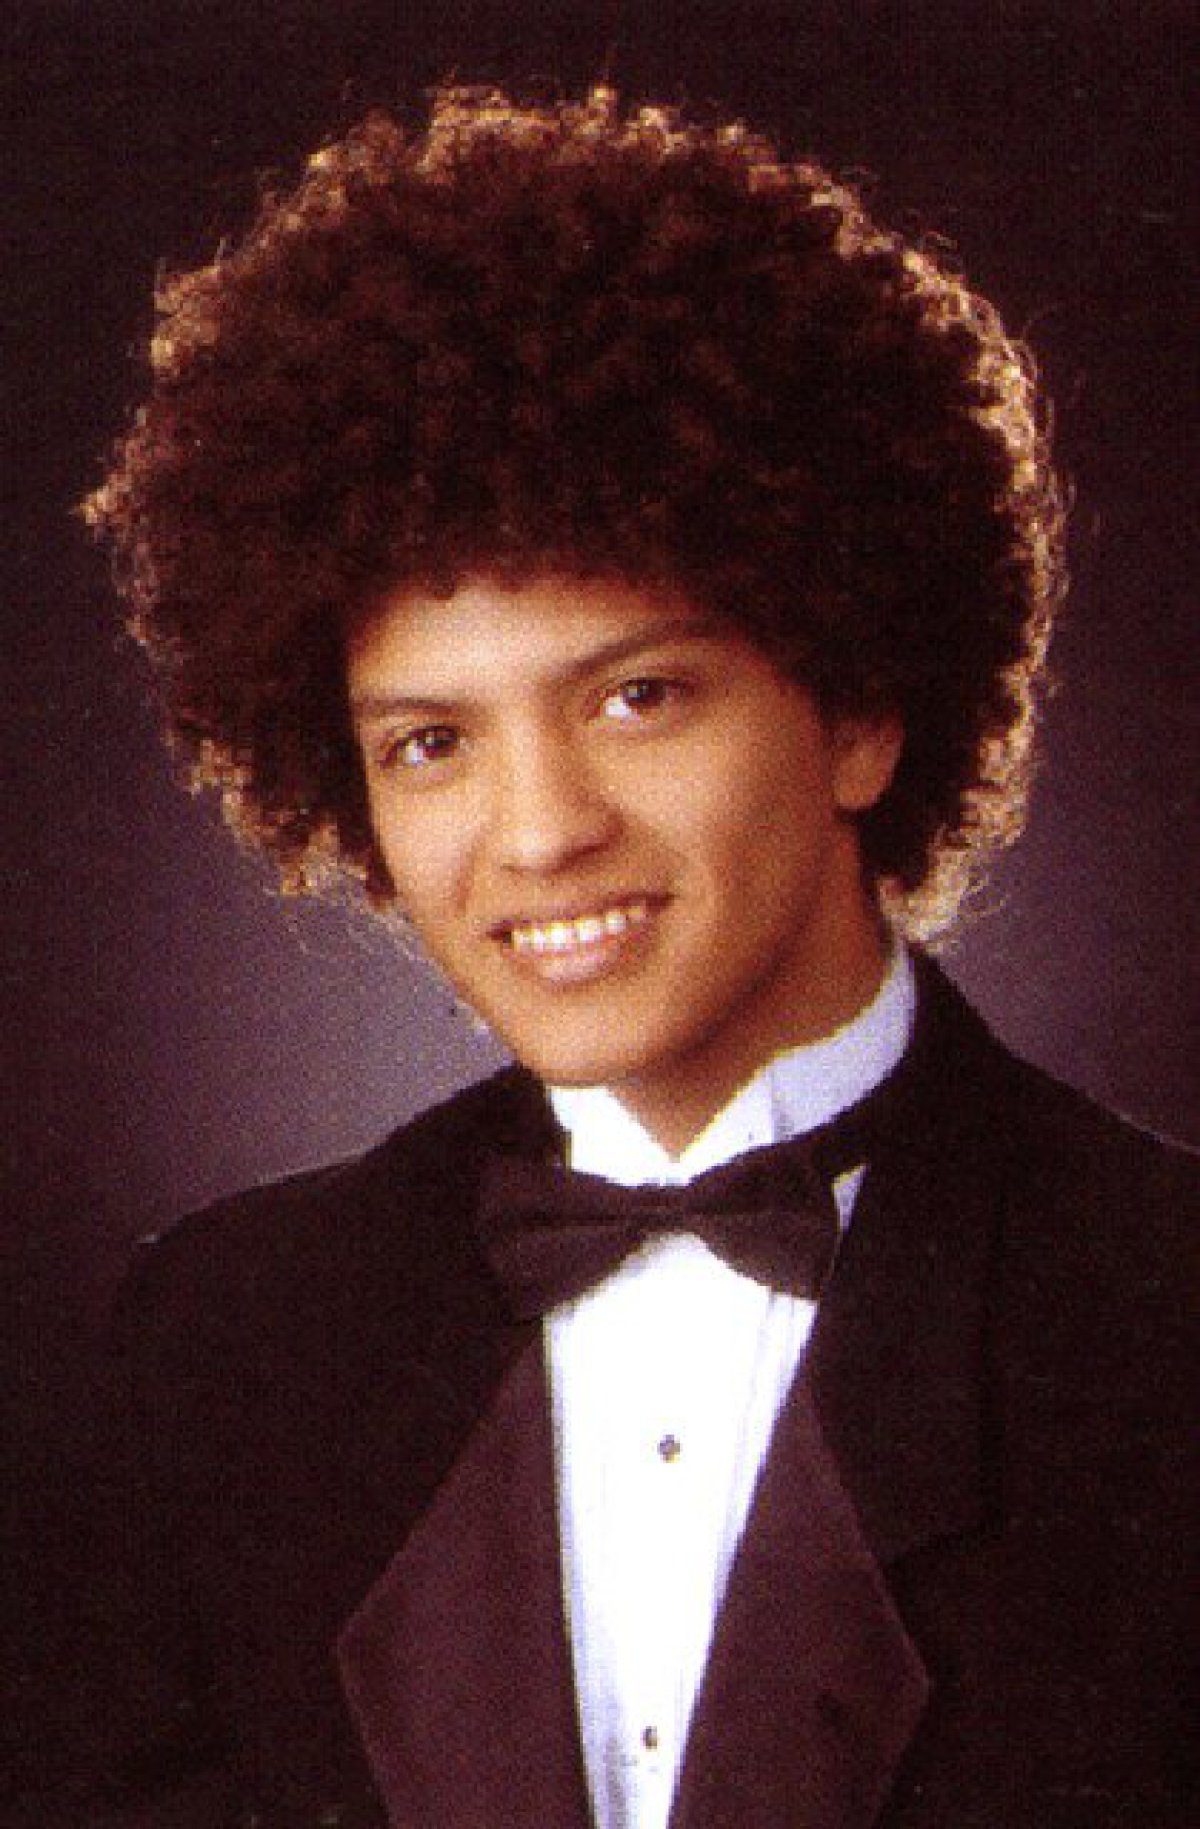 Aplausos para el afro de Bruno Mars!